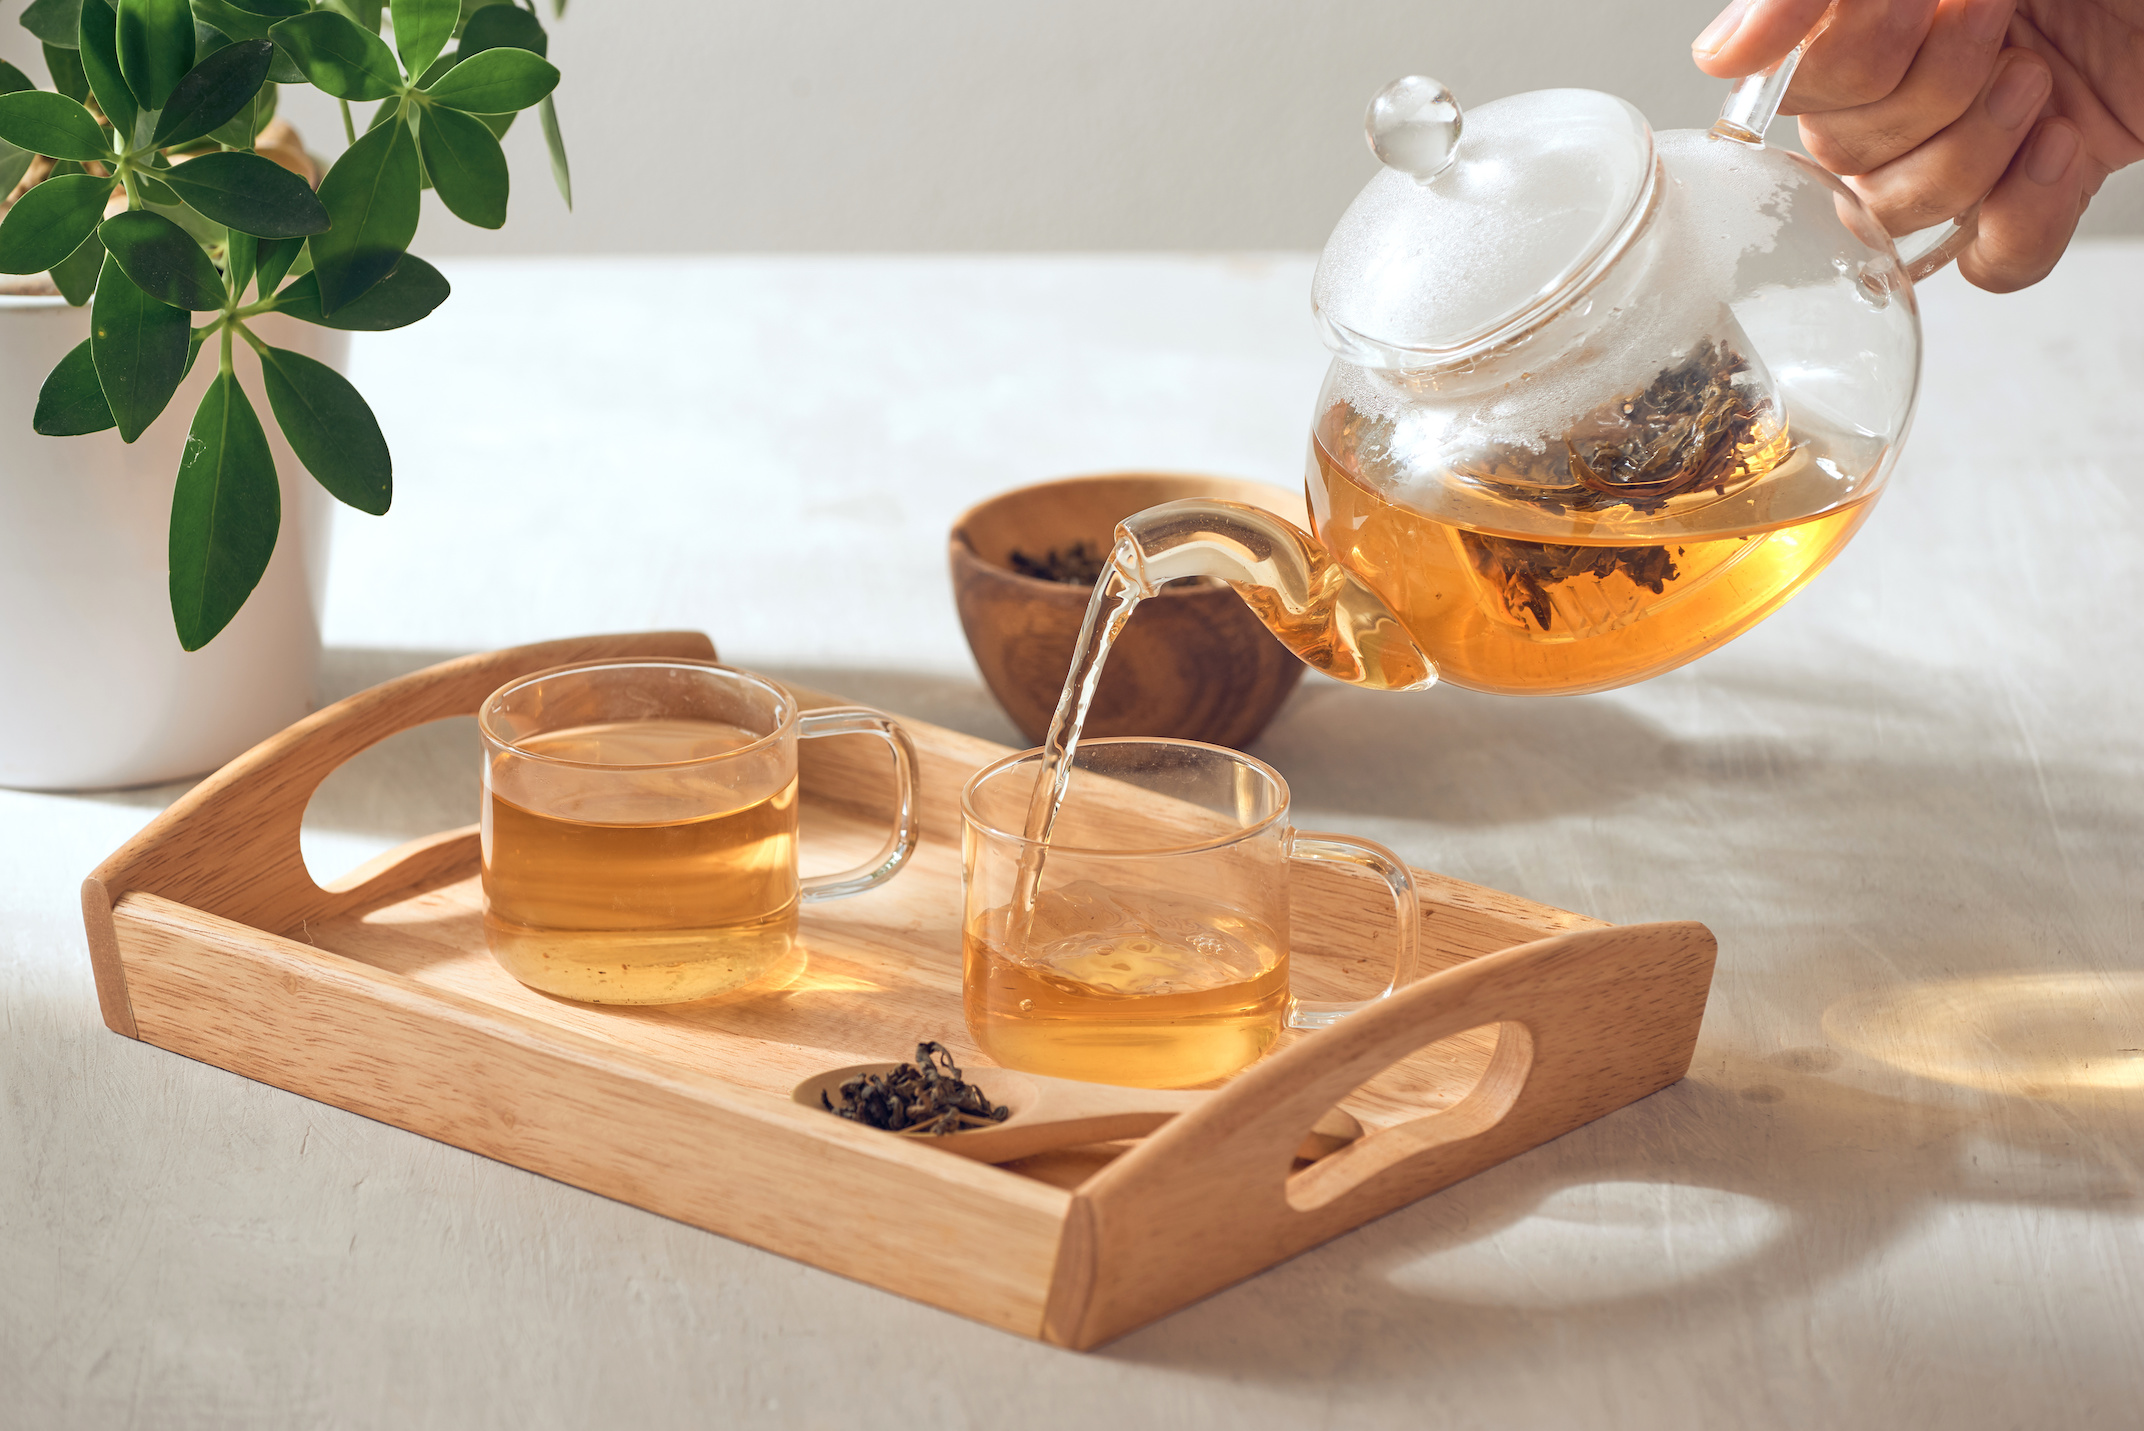 Floral, fruité, boisé, épicé ou herbacé, le thé se décline dans une palette d'arômes. © Makistock, Adobe Stock